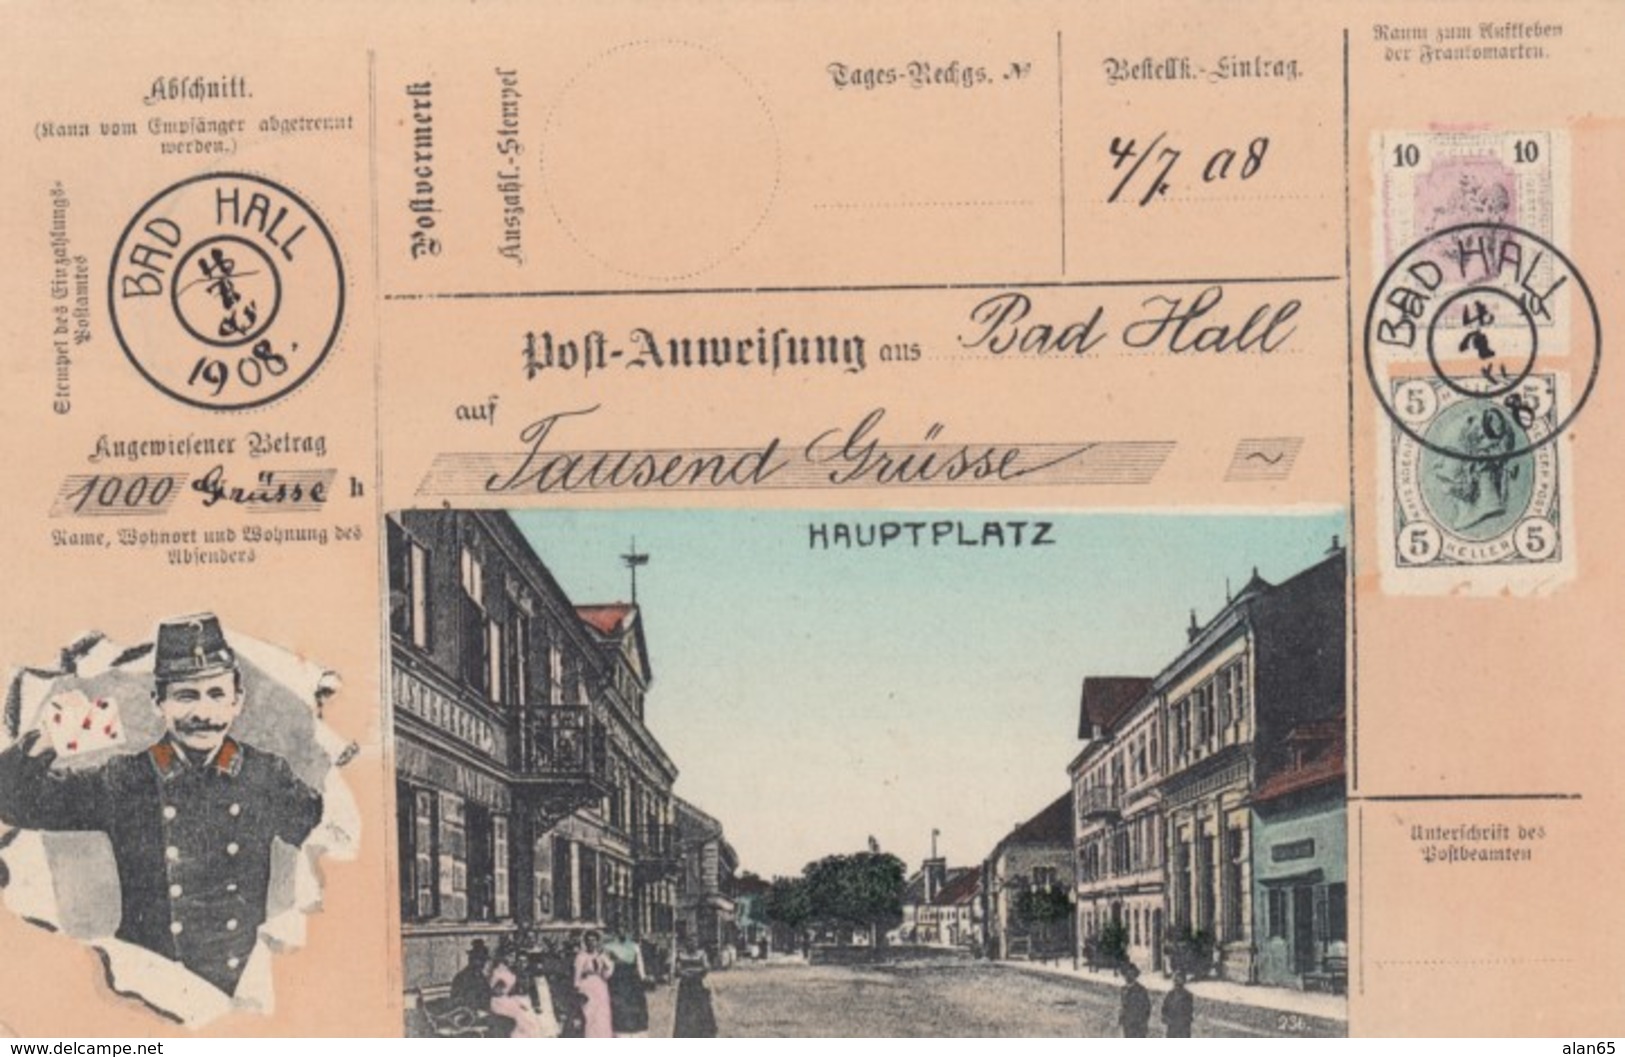 Hauptplatz Bad Hall Austria View, Austrian Mail Service Theme, Postman, Facsimile Stamps Image, C1900s Vintage Postcard - Post & Briefboten